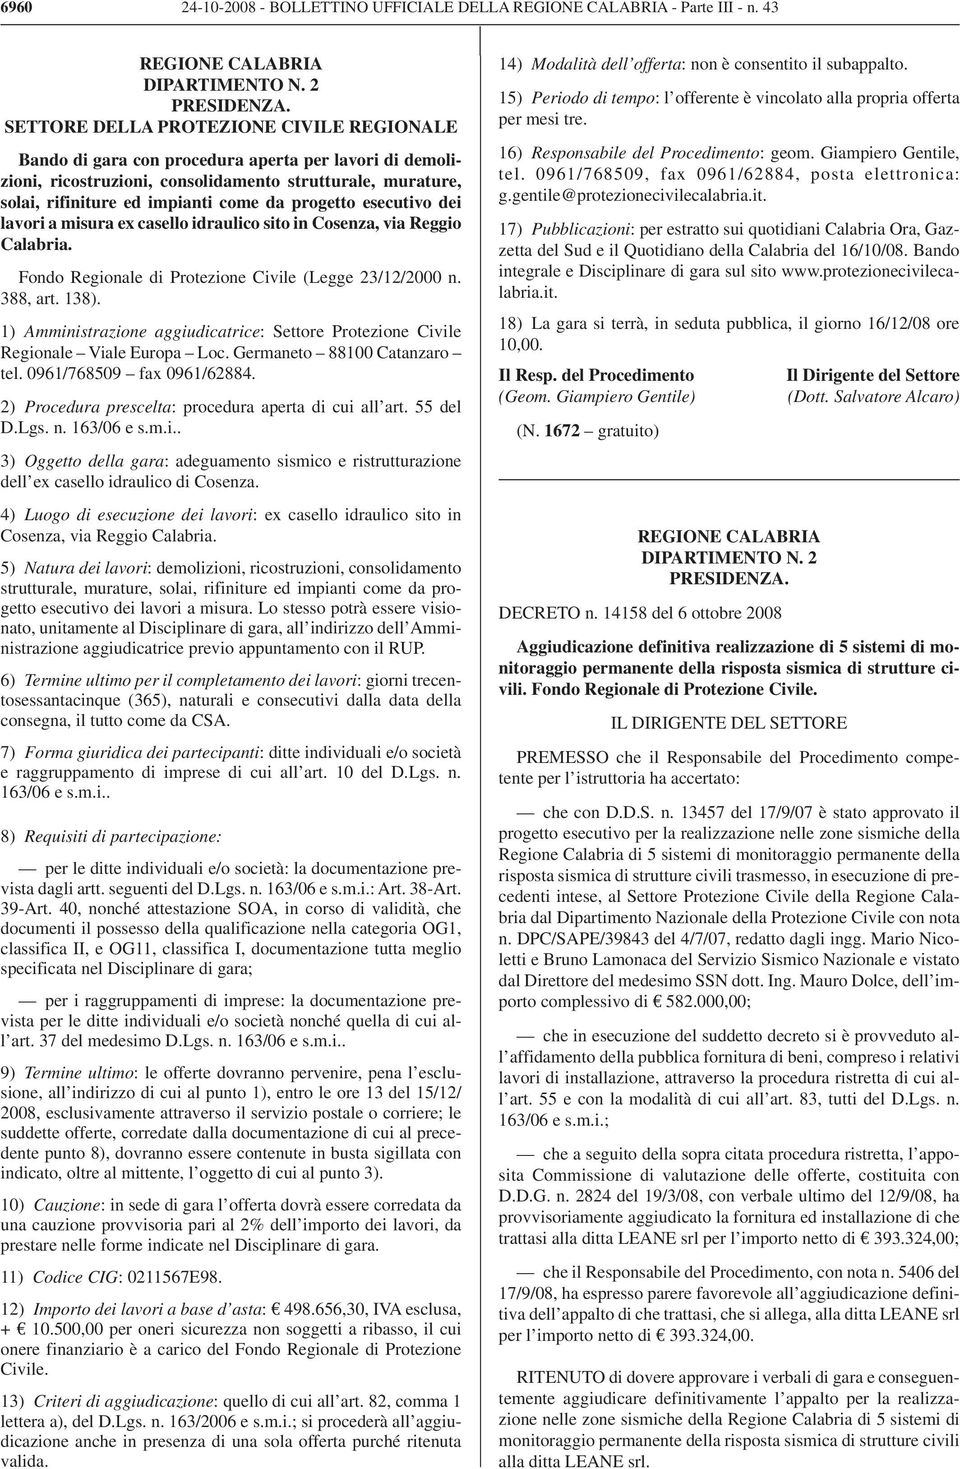 progetto esecutivo dei lavori a misura ex casello idraulico sito in Cosenza, via Reggio Calabria. Fondo Regionale di Protezione Civile (Legge 23/12/2000 n. 388, art. 138).